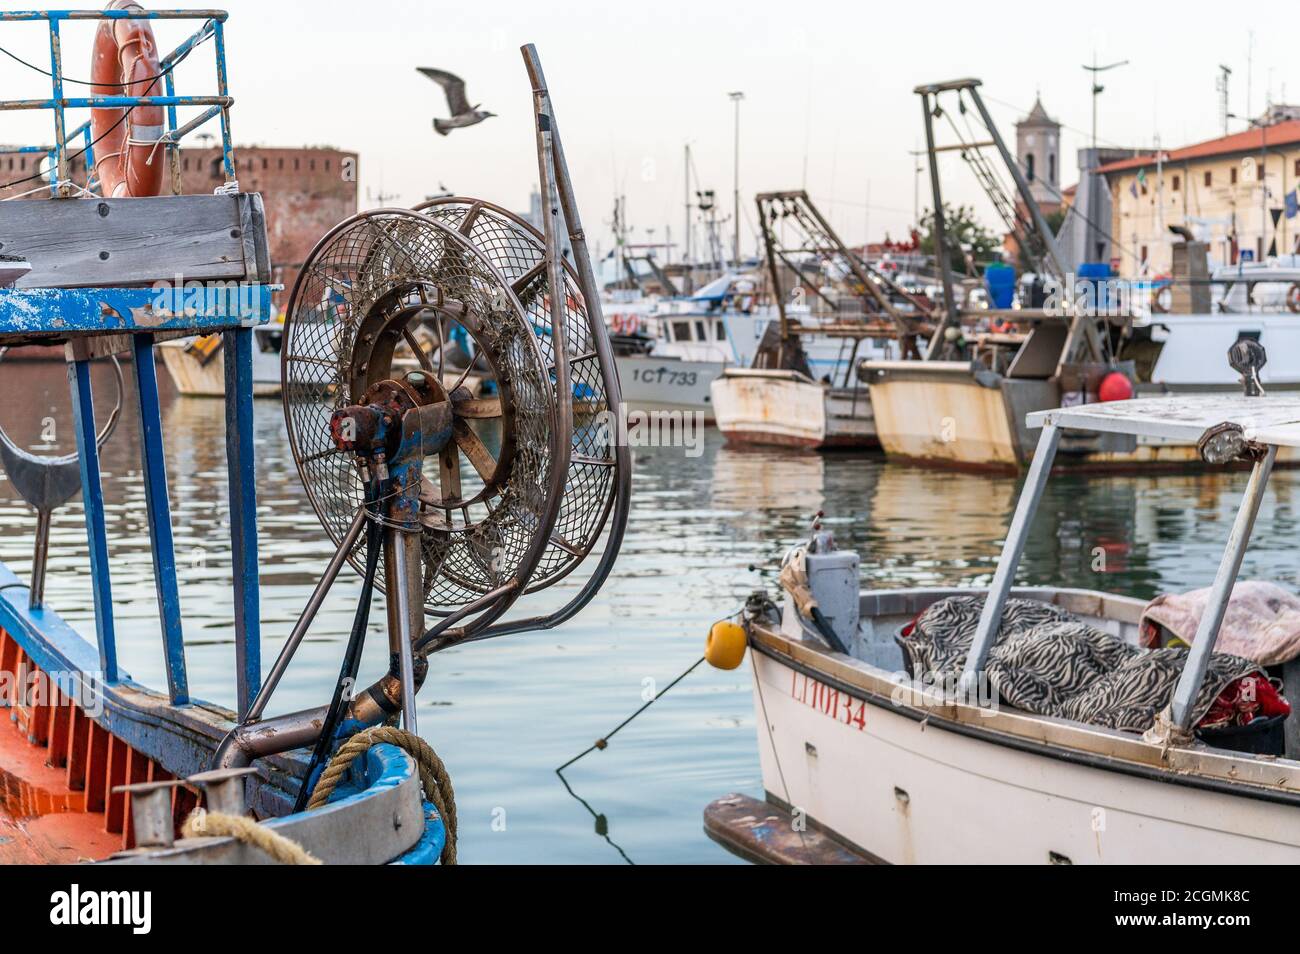 Bateaux de pêche et pêcheurs au port de Livourne, Toscane, Italie Banque D'Images